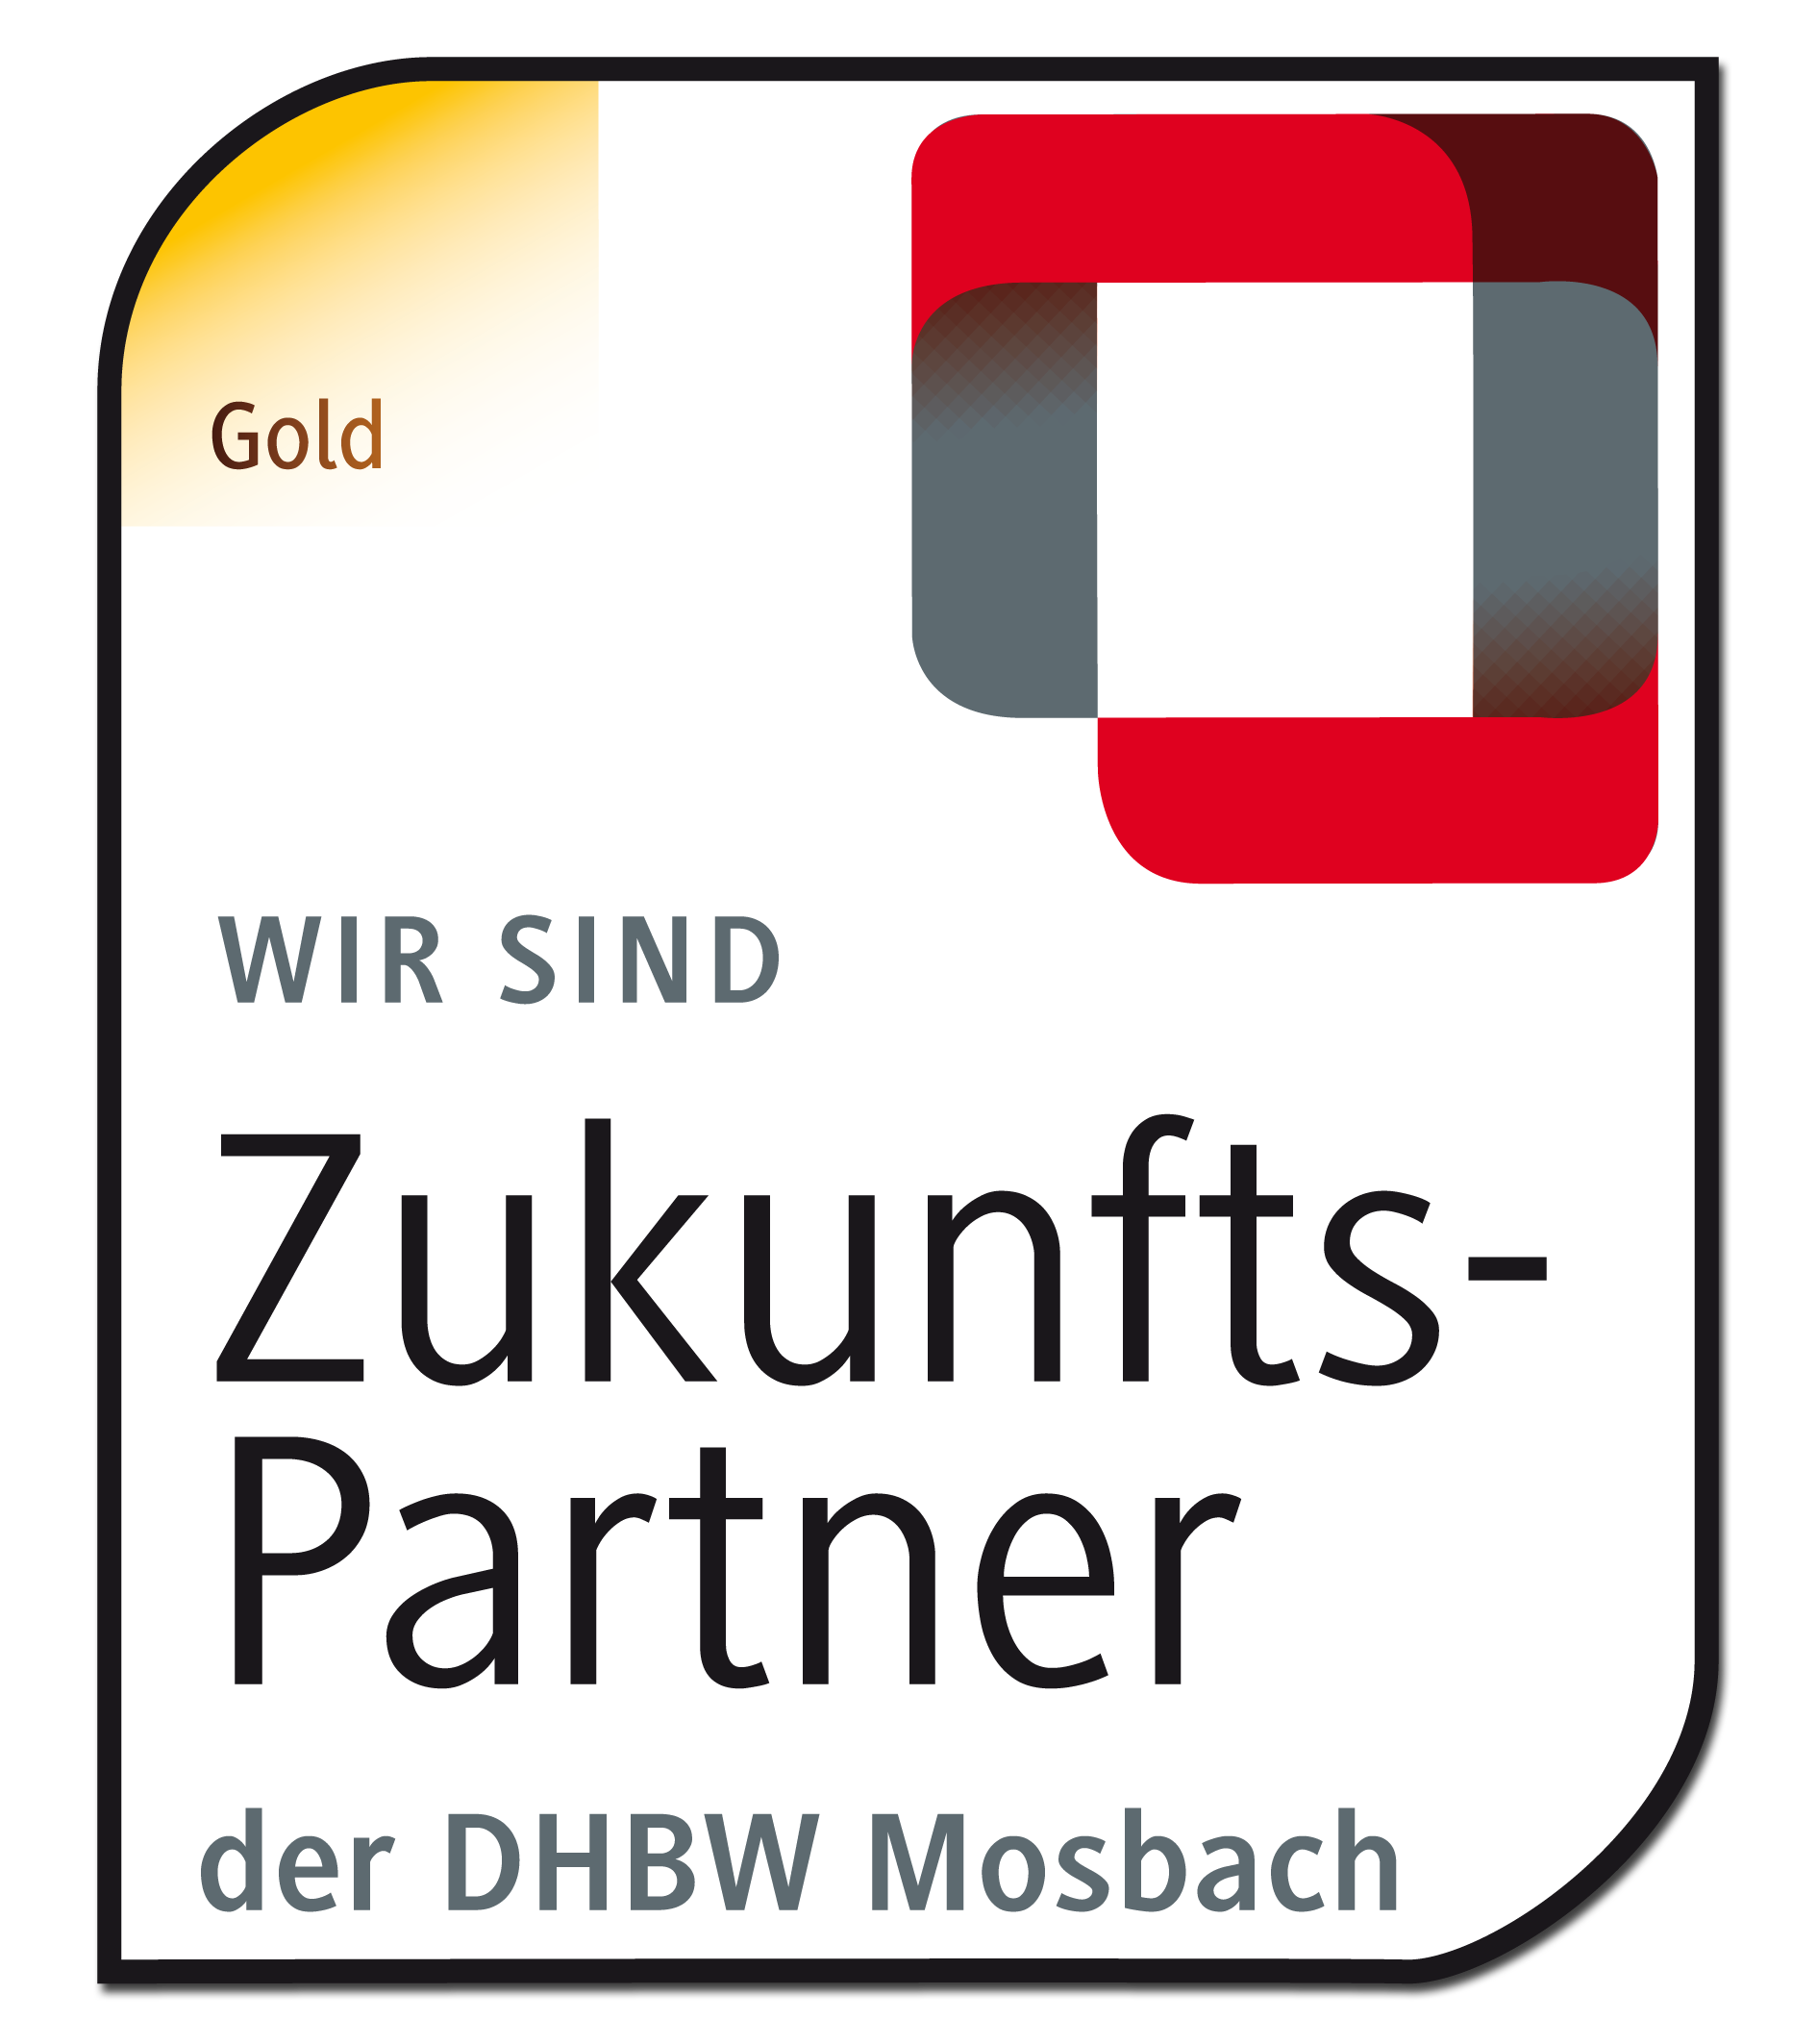 DHBW Mosbach Partner